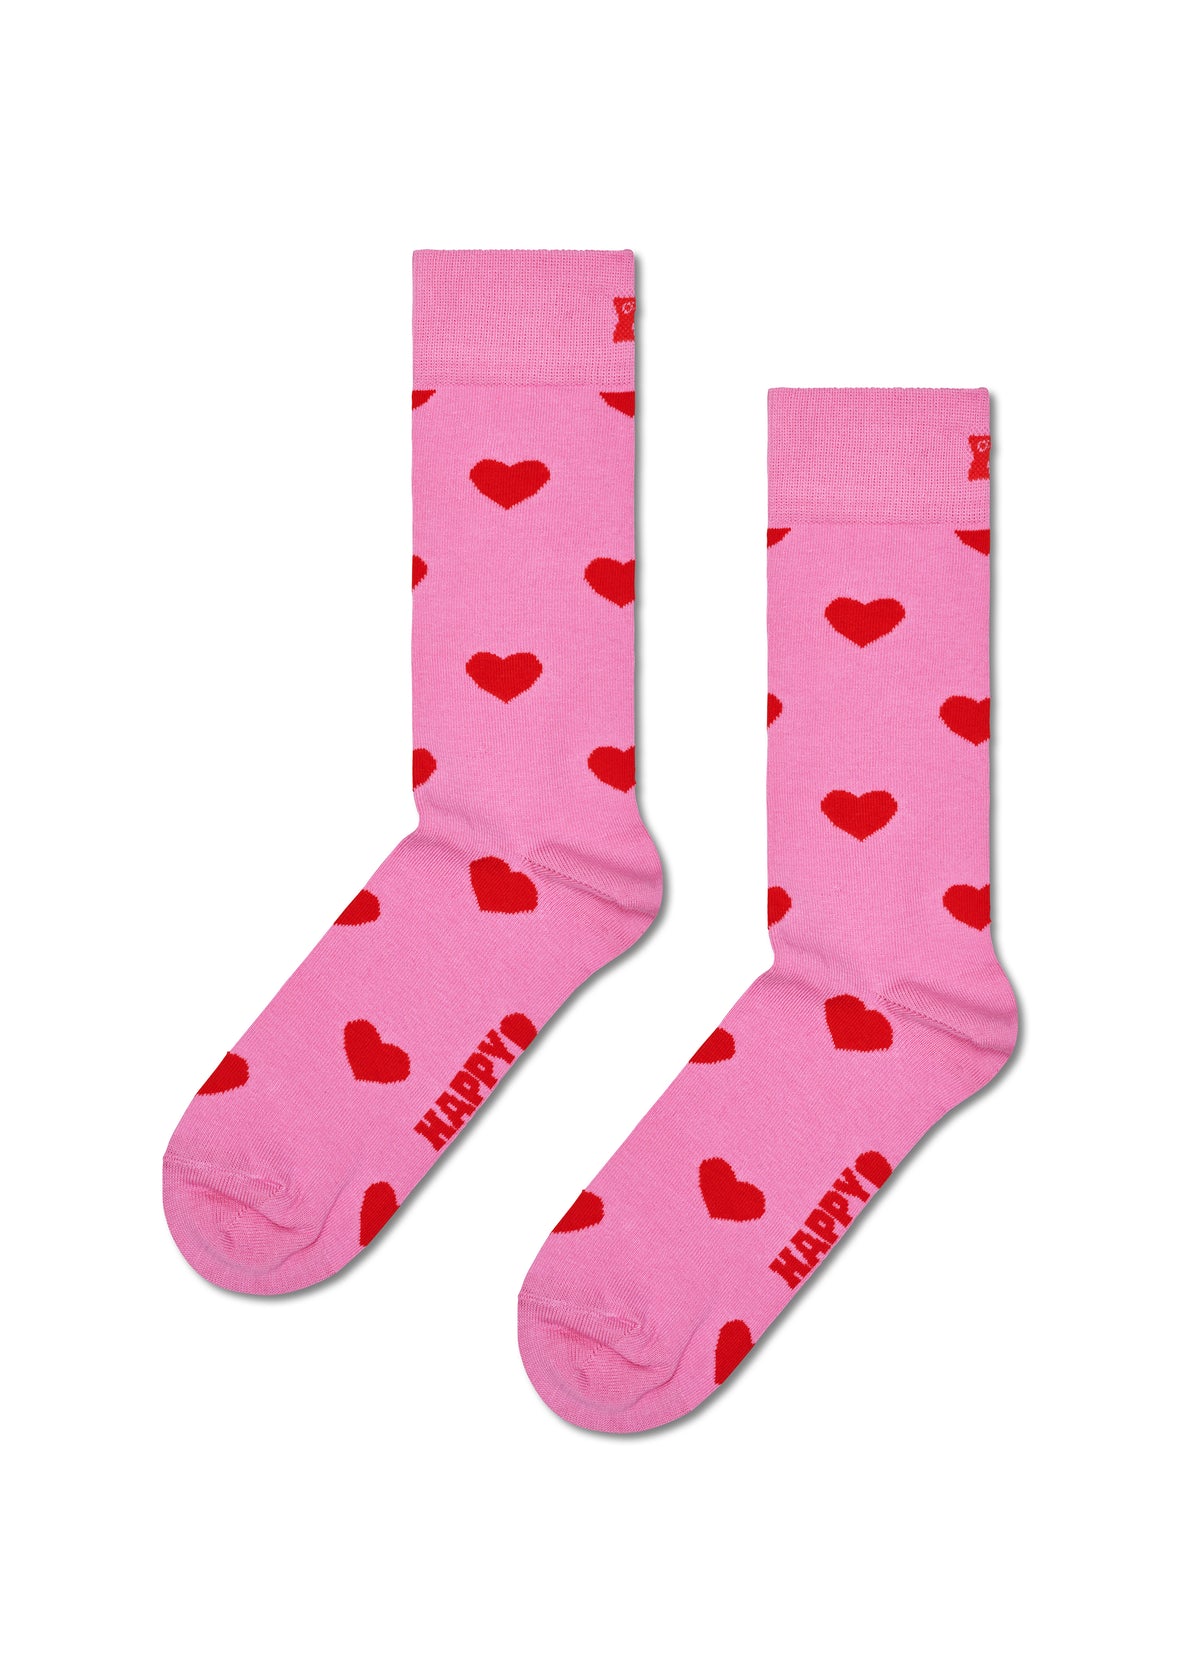 Adult socks - Heart